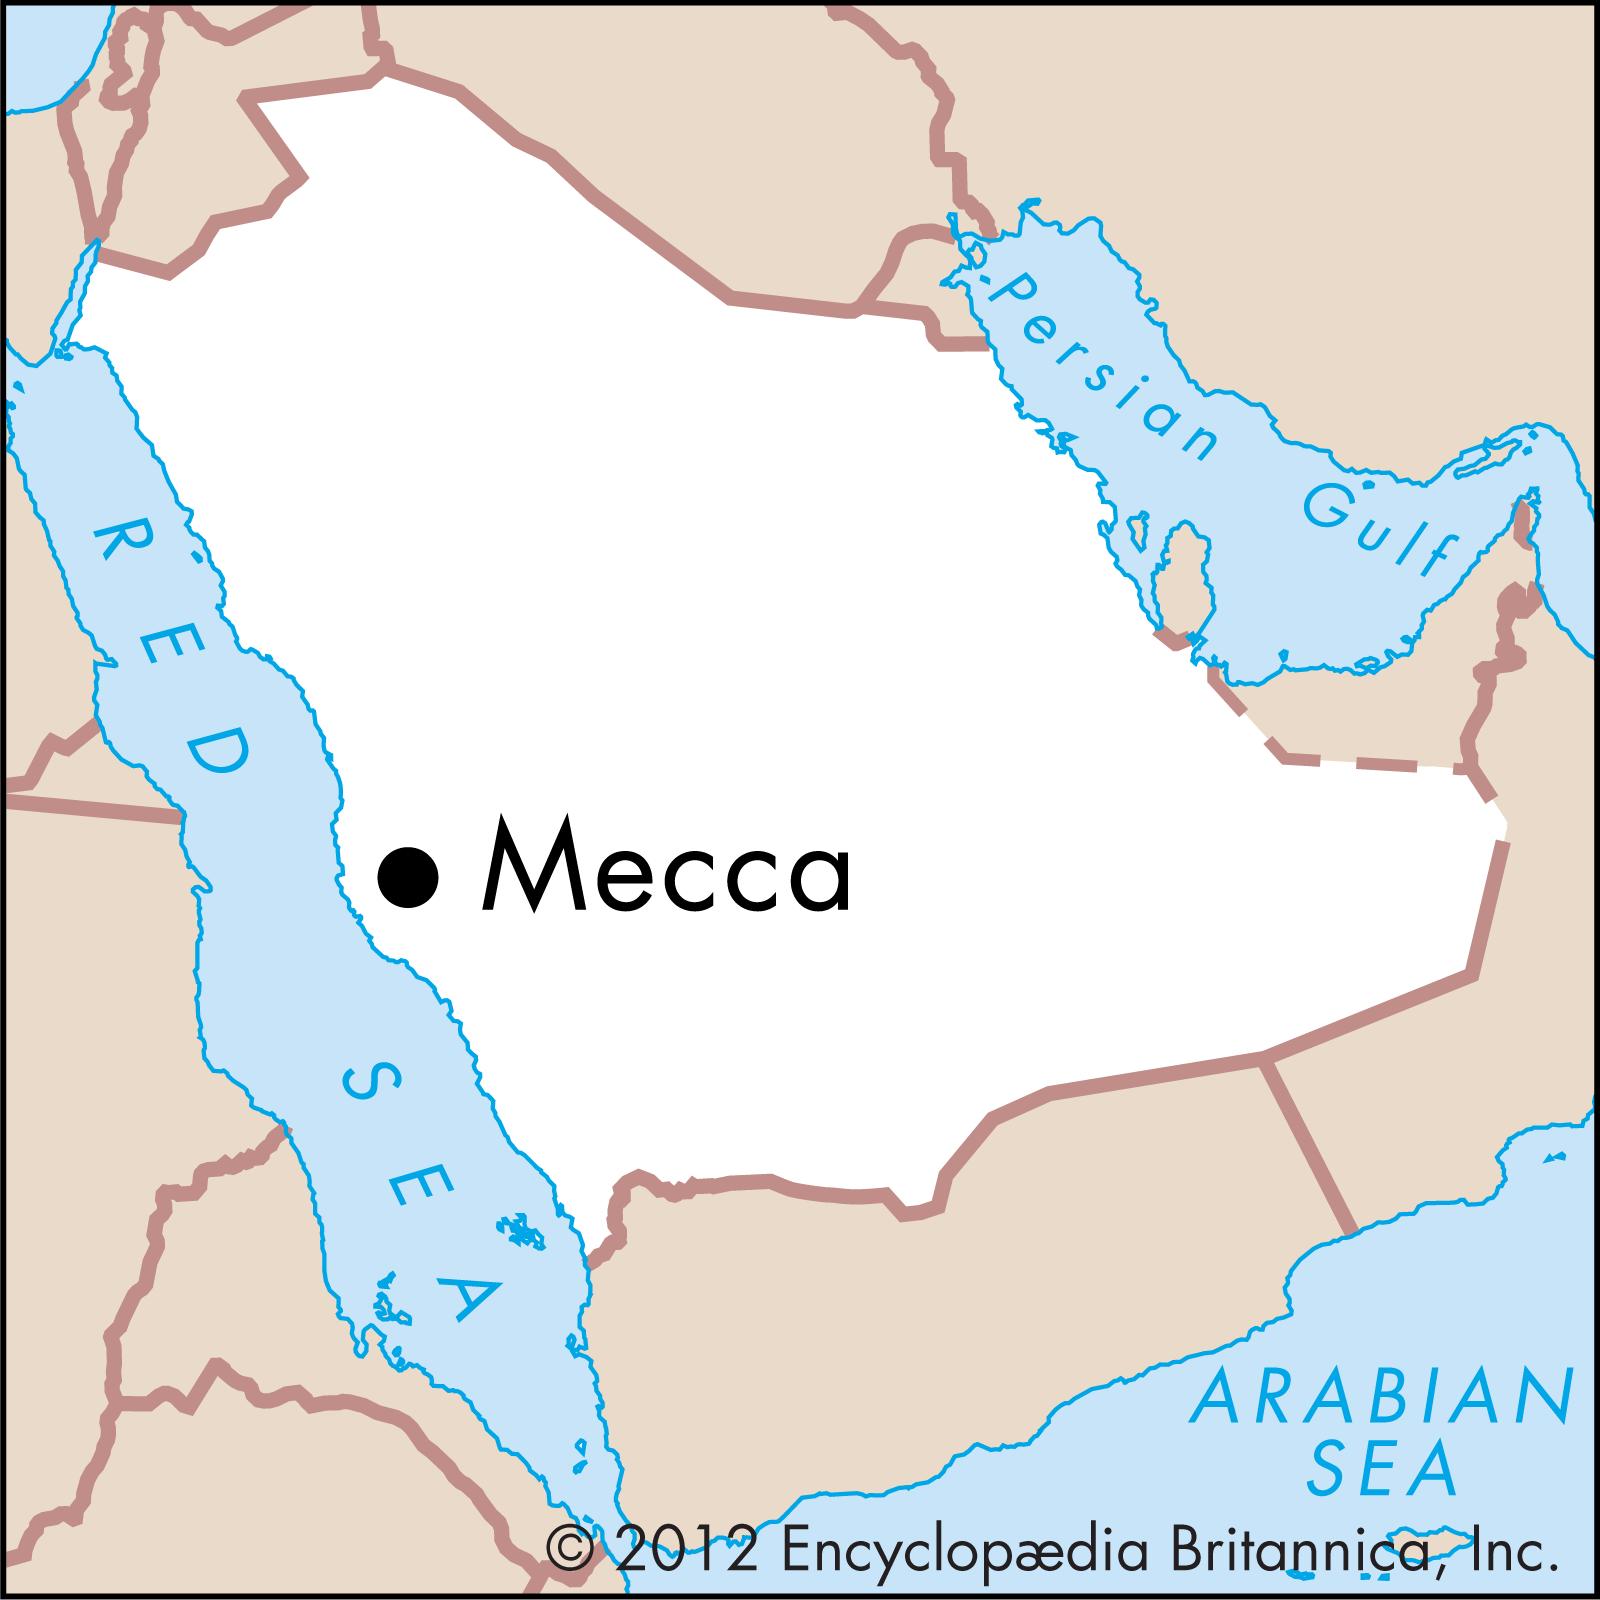 Священные города мусульман Мекка и Медина на карте. Мекка на карте Саудовской Аравии. Города мусульман Мекка и Медина на карте. Саудовская аравия расположена